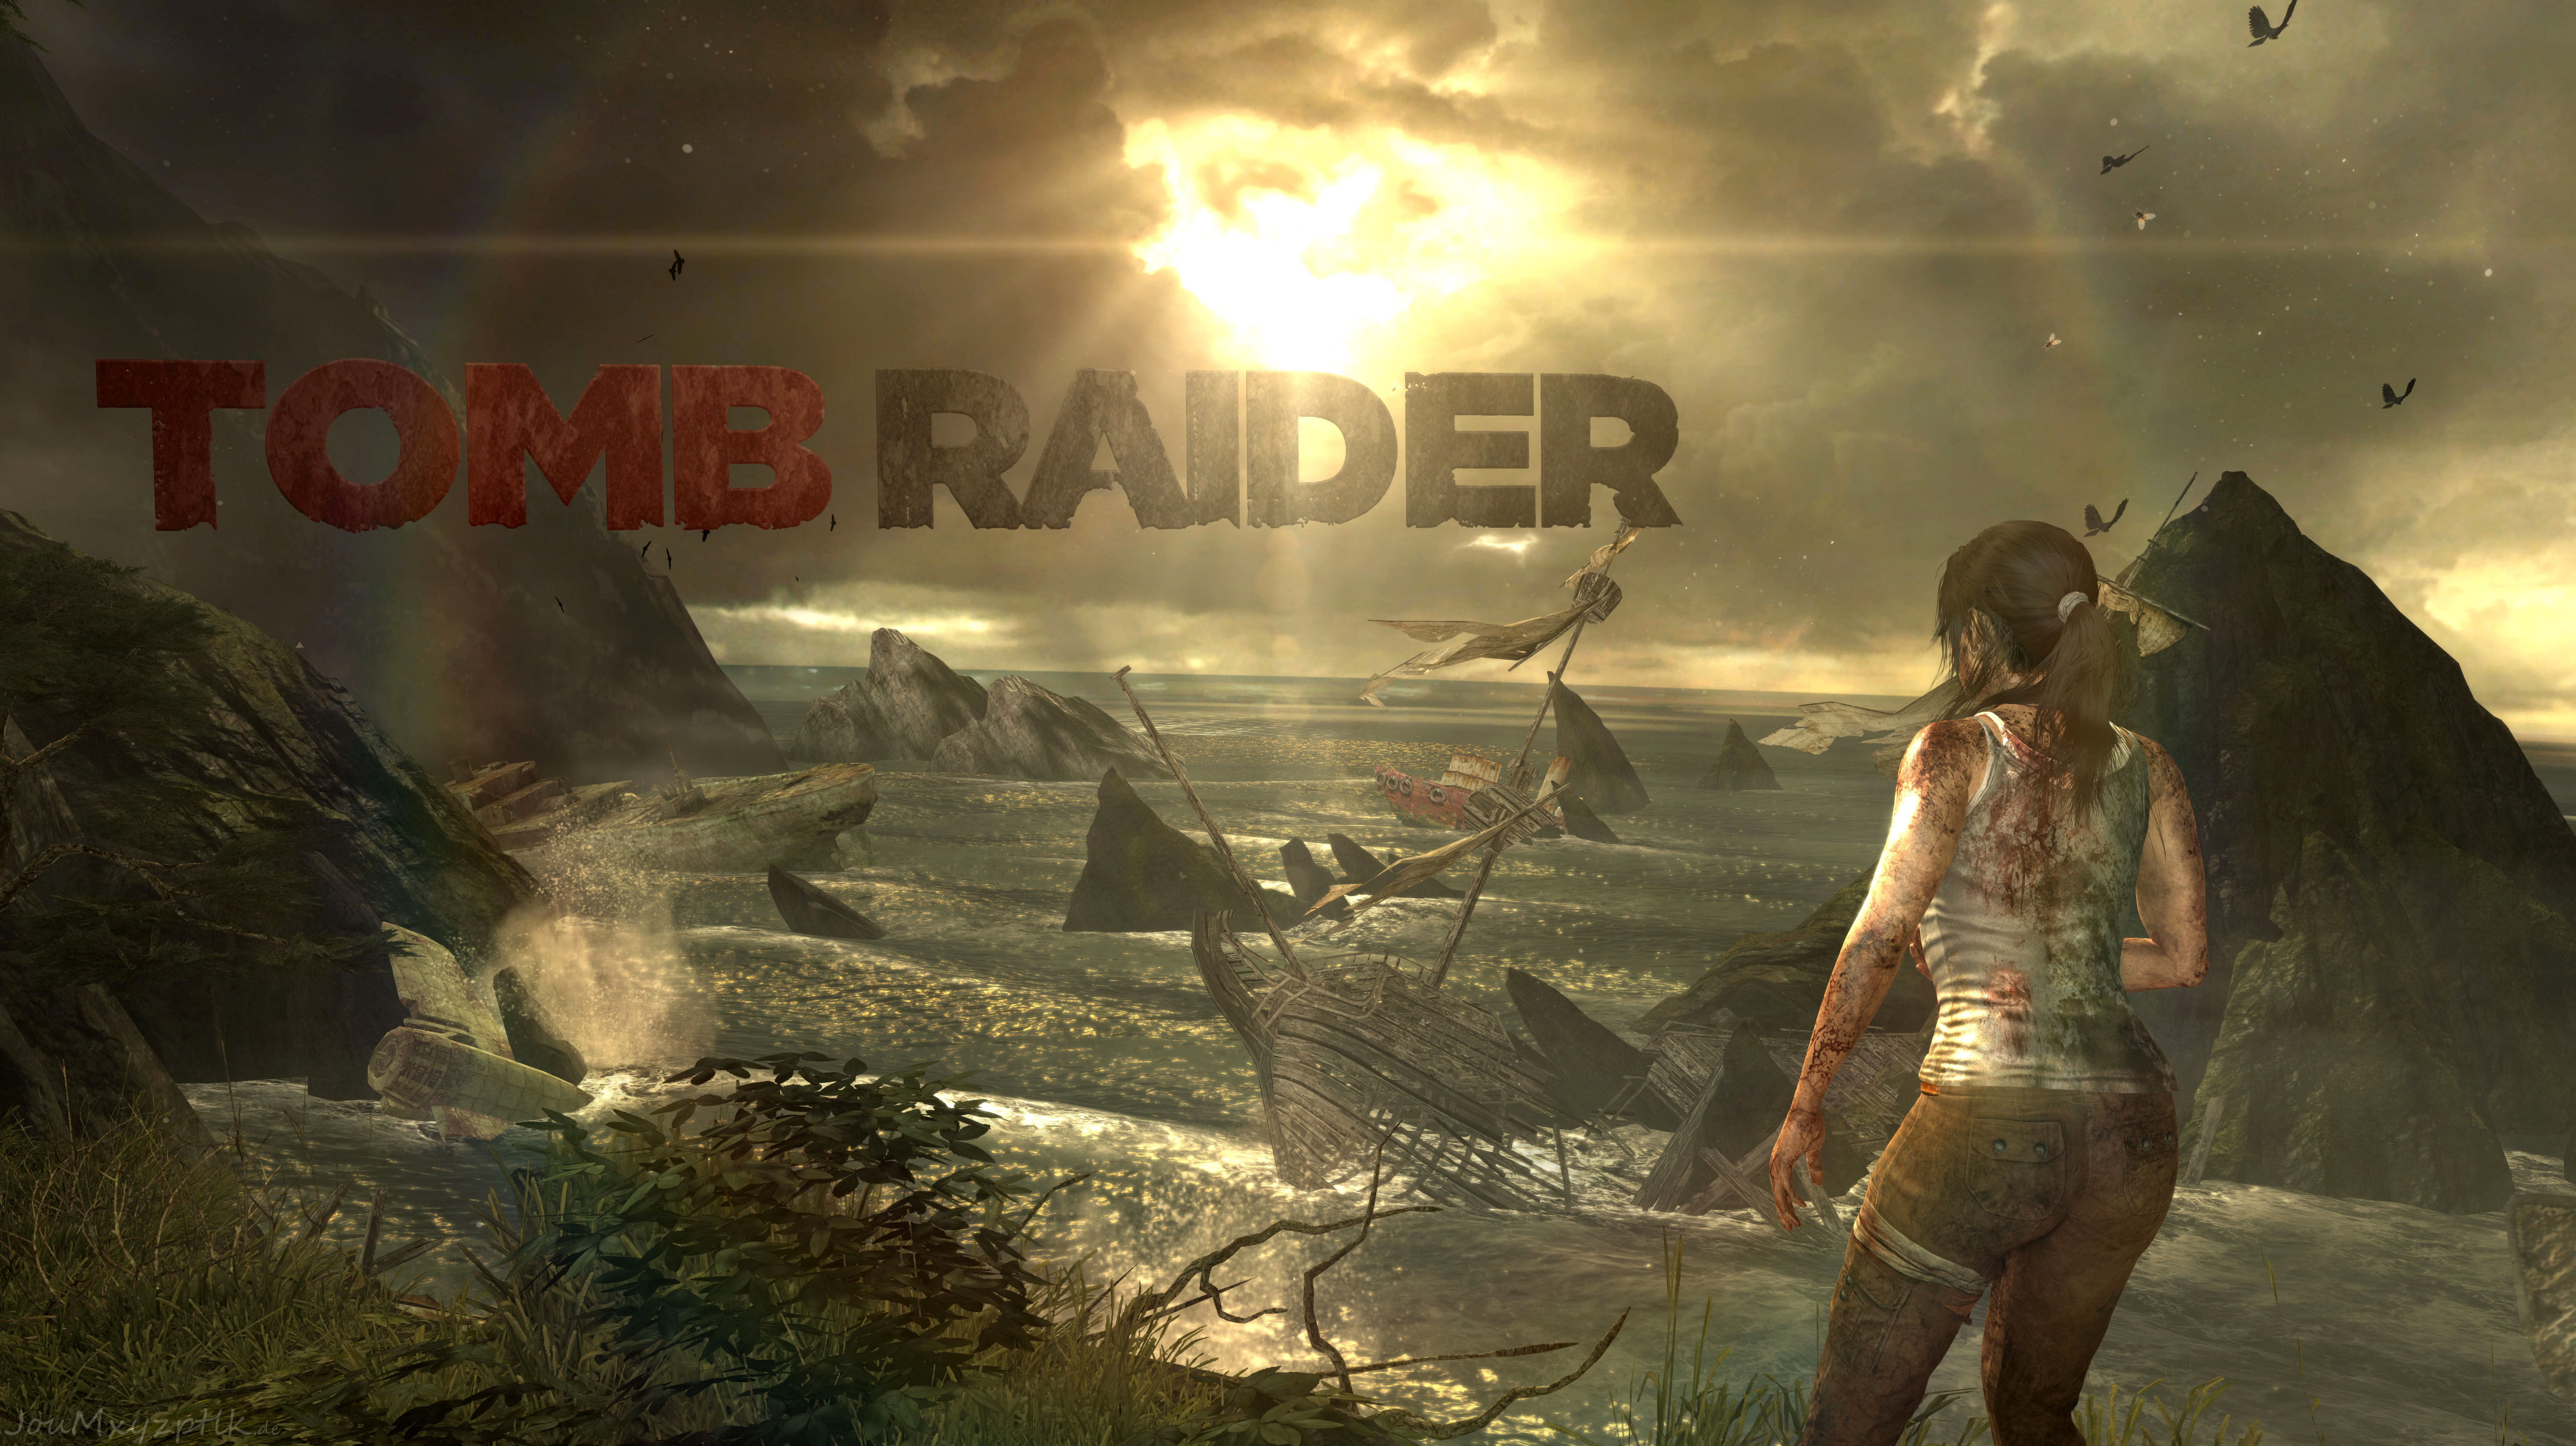 Игры 2 игры 2013. Томб Райдер игра 2013. Tomb Raider: игра новая 2013. Томб Райдер 11.